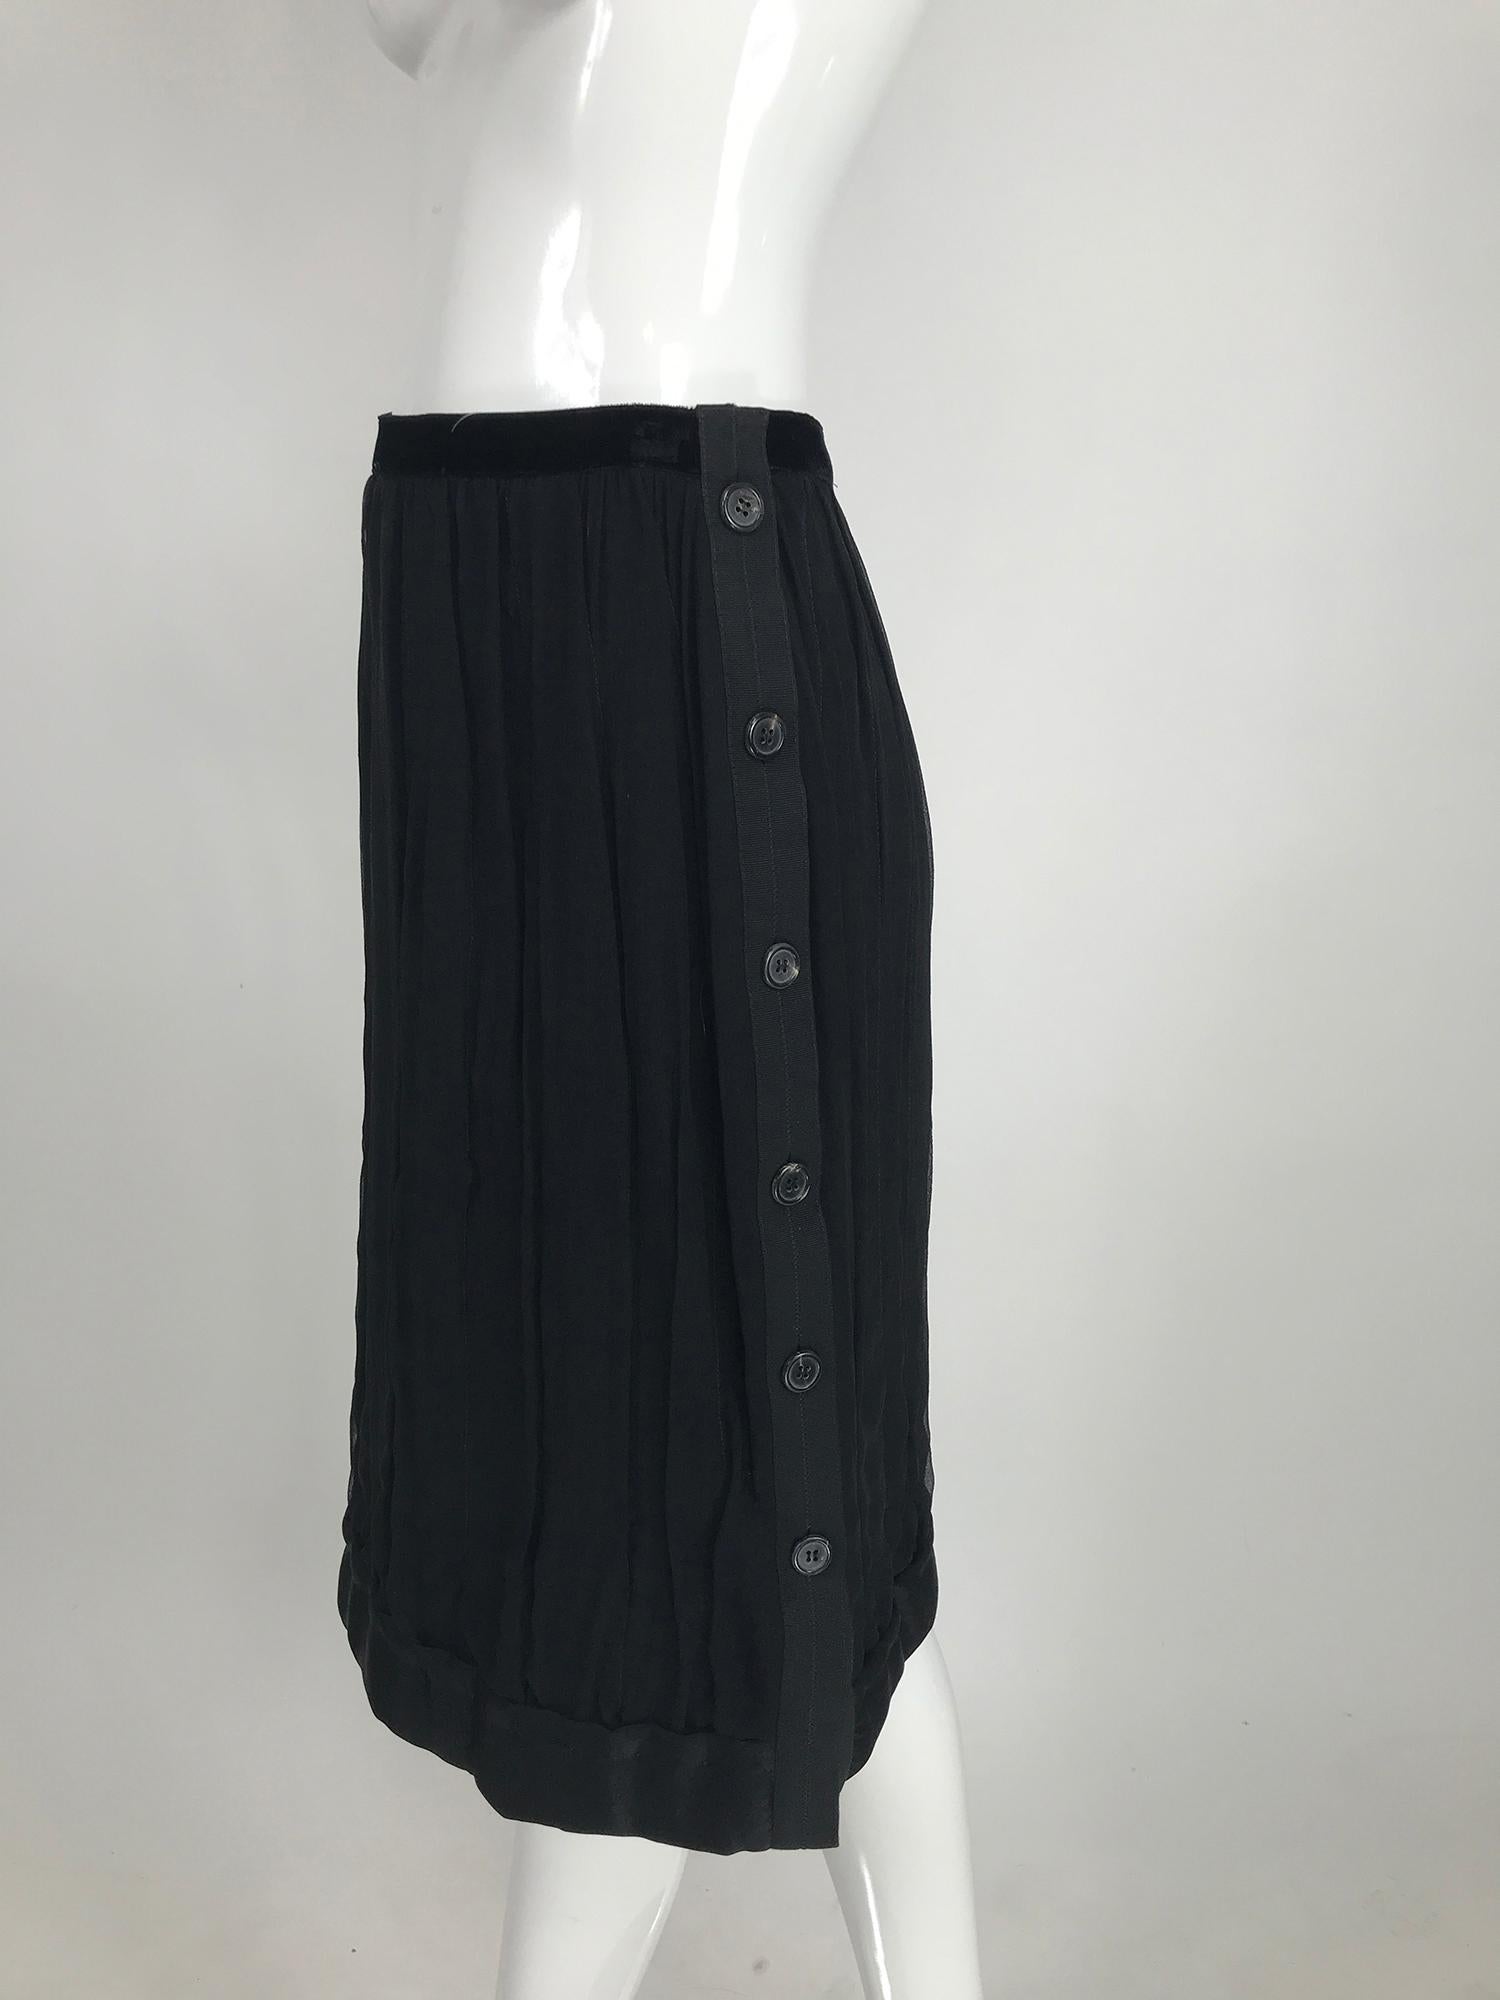 La jupe Lanvin en mousseline de soie noire présente une bande de taille en velours et une bande d'ourlet en satin de soie paddée. La mousseline de la jupe est drapée verticalement sur une doublure en tricot de soie. Cette jupe unique se ferme sur le